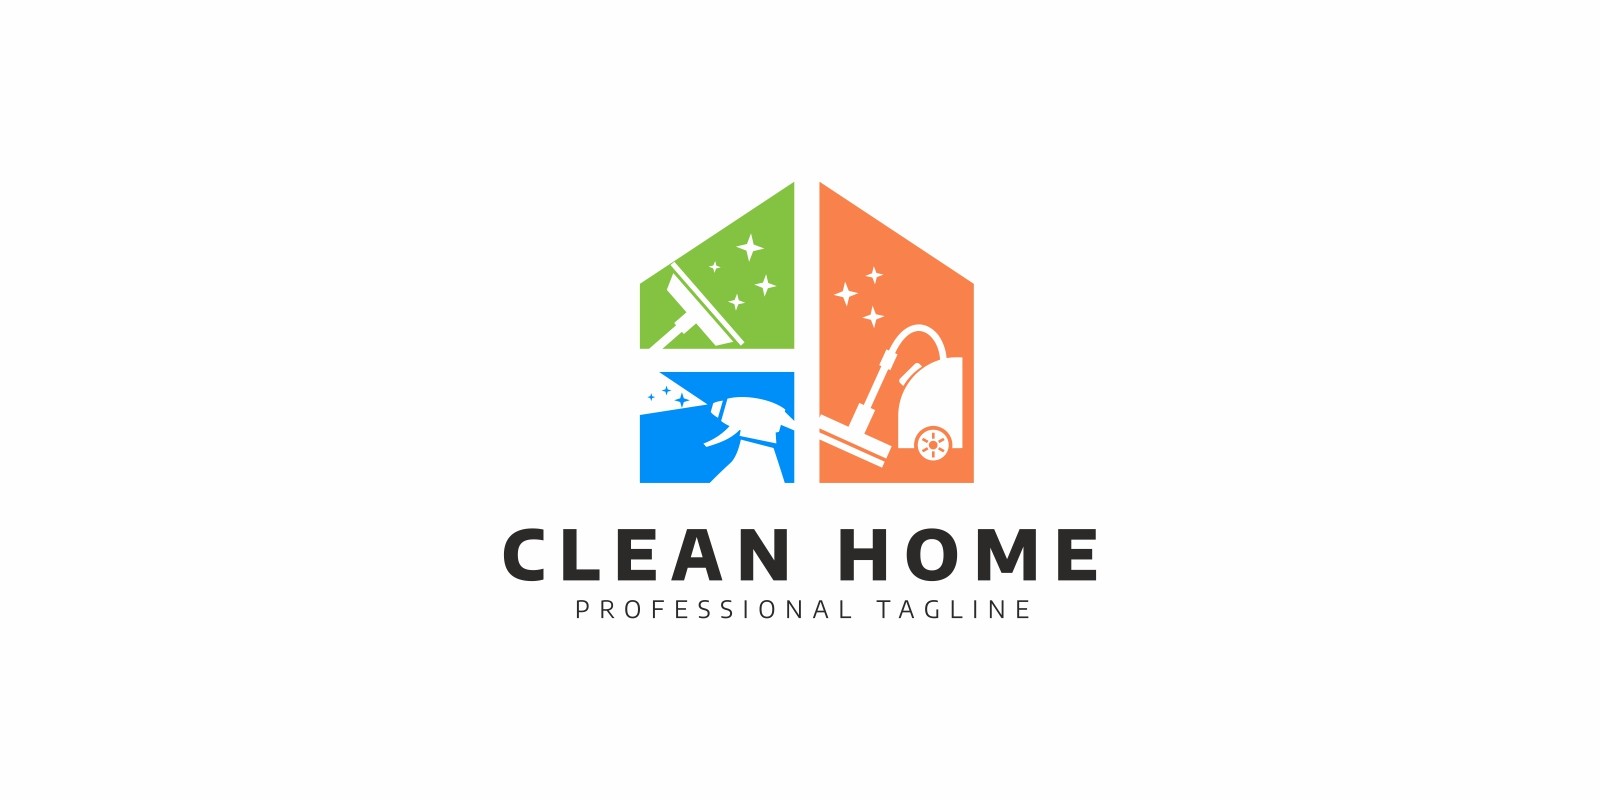 Логотип чисто. Чистый дом логотип. Логотип клининговой компании. Оригинальные логотипы клининга. Клининг дома логотип.